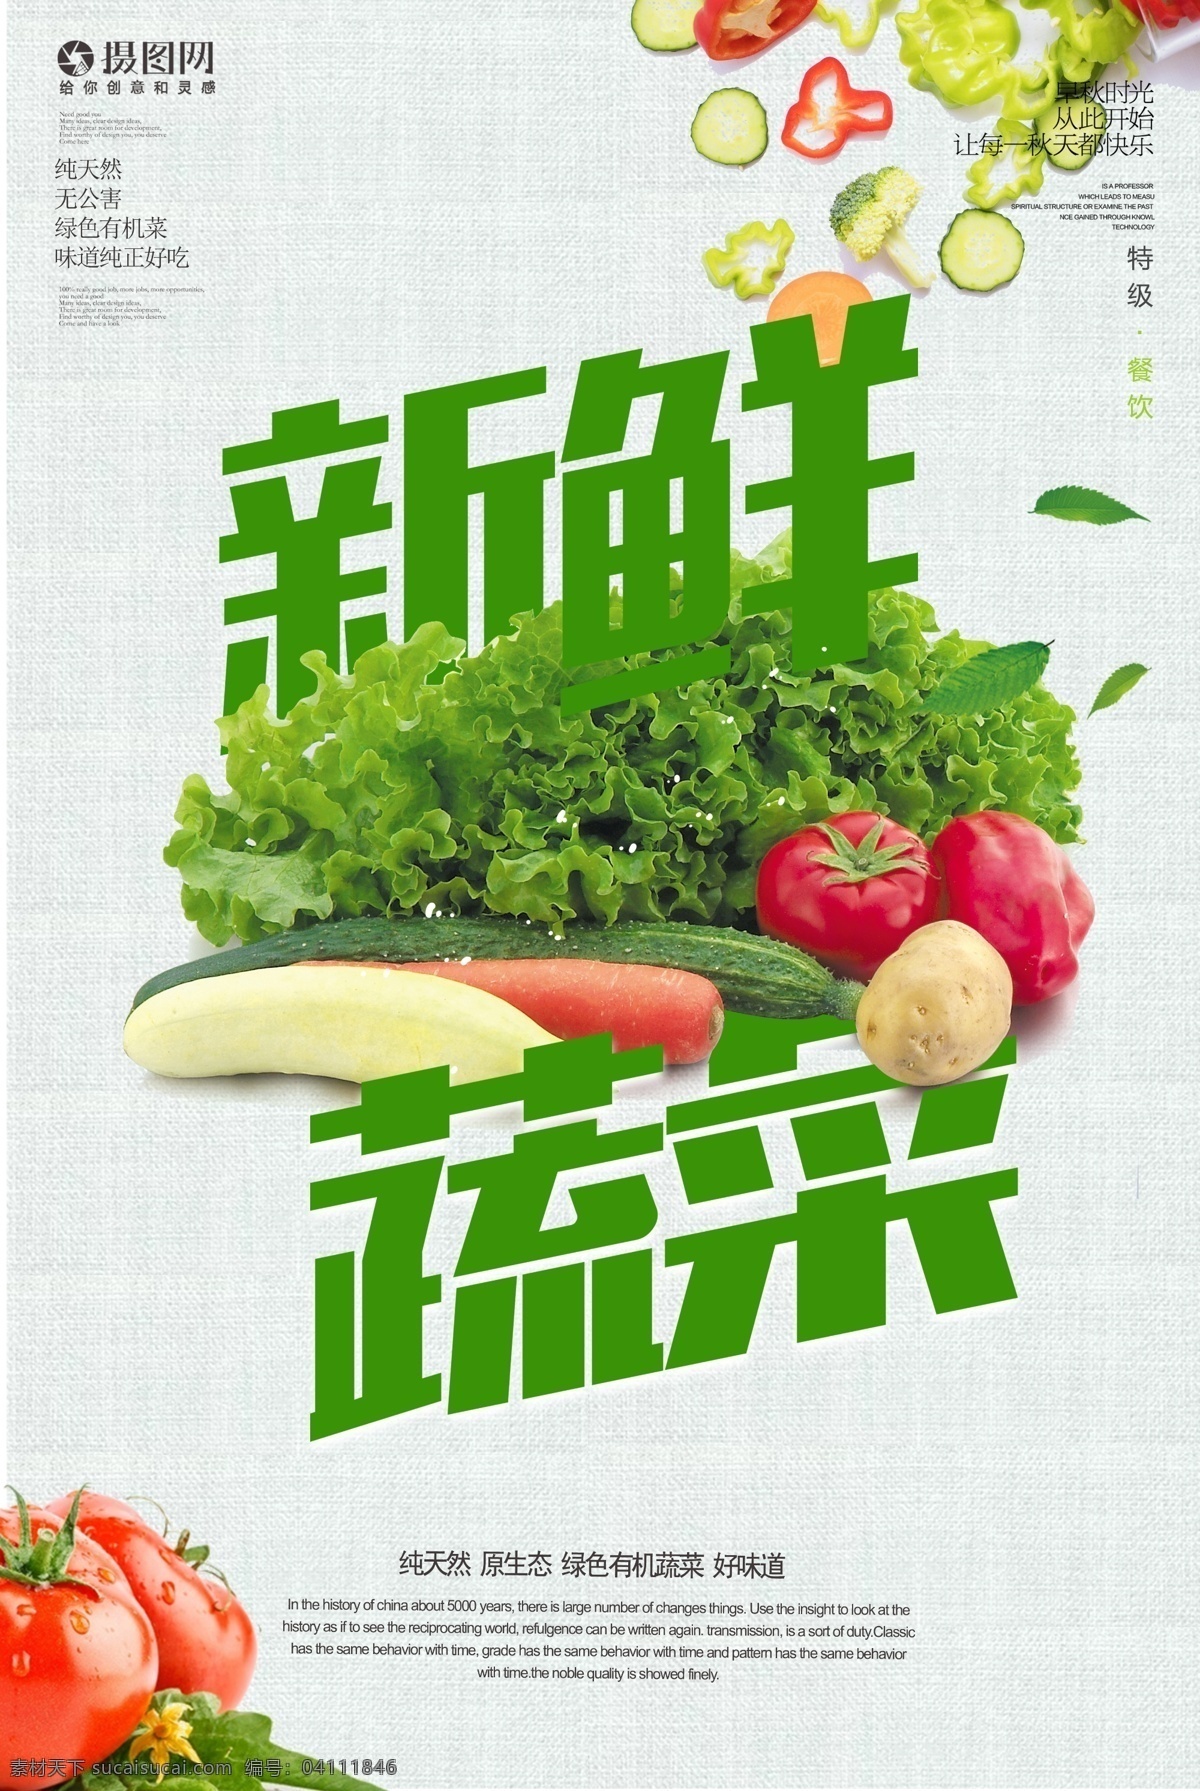 新鲜 果蔬 促销 海报 健康 无公害 蔬菜 时令蔬菜 时蔬 有机蔬菜 果蔬海报设计 纯天然蔬菜 蔬菜海报 新鲜果蔬 促销海报